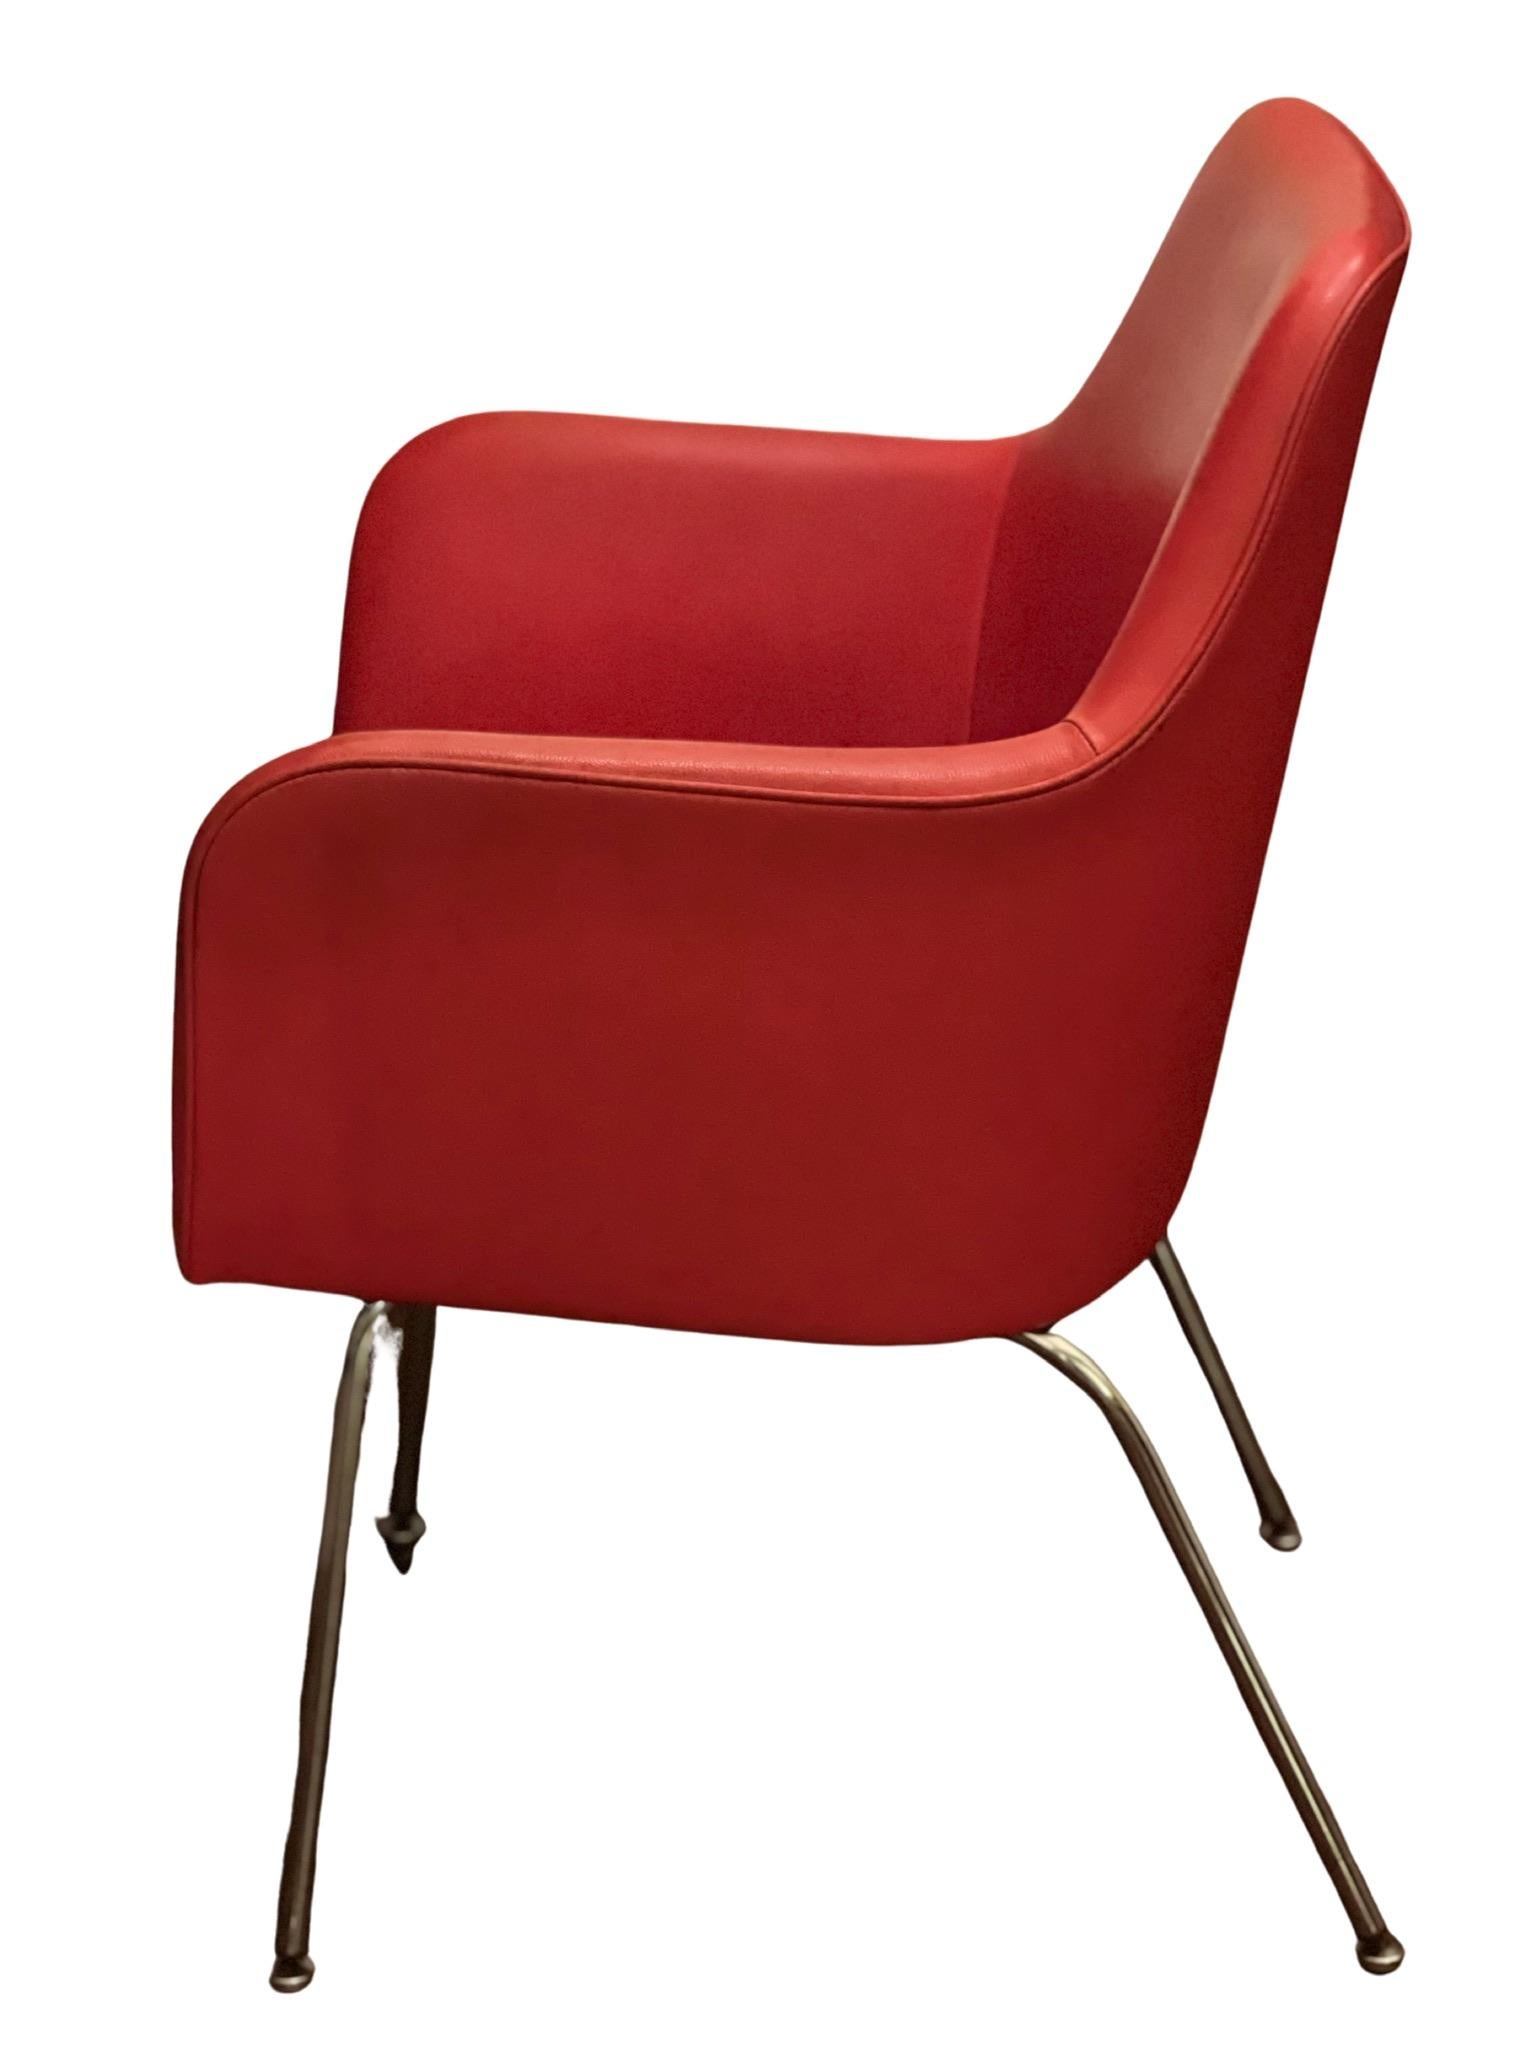 Stilvoller Eimersessel aus der Mitte des Jahrhunderts von GoodForm, 1951. Der Stuhl ist bequem und robust, mit klassischen Linien aus der Jahrhundertmitte. Chromsockel und Naugahyde sind in gutem Zustand. Alle Teile sind intakt. Ein großartiger